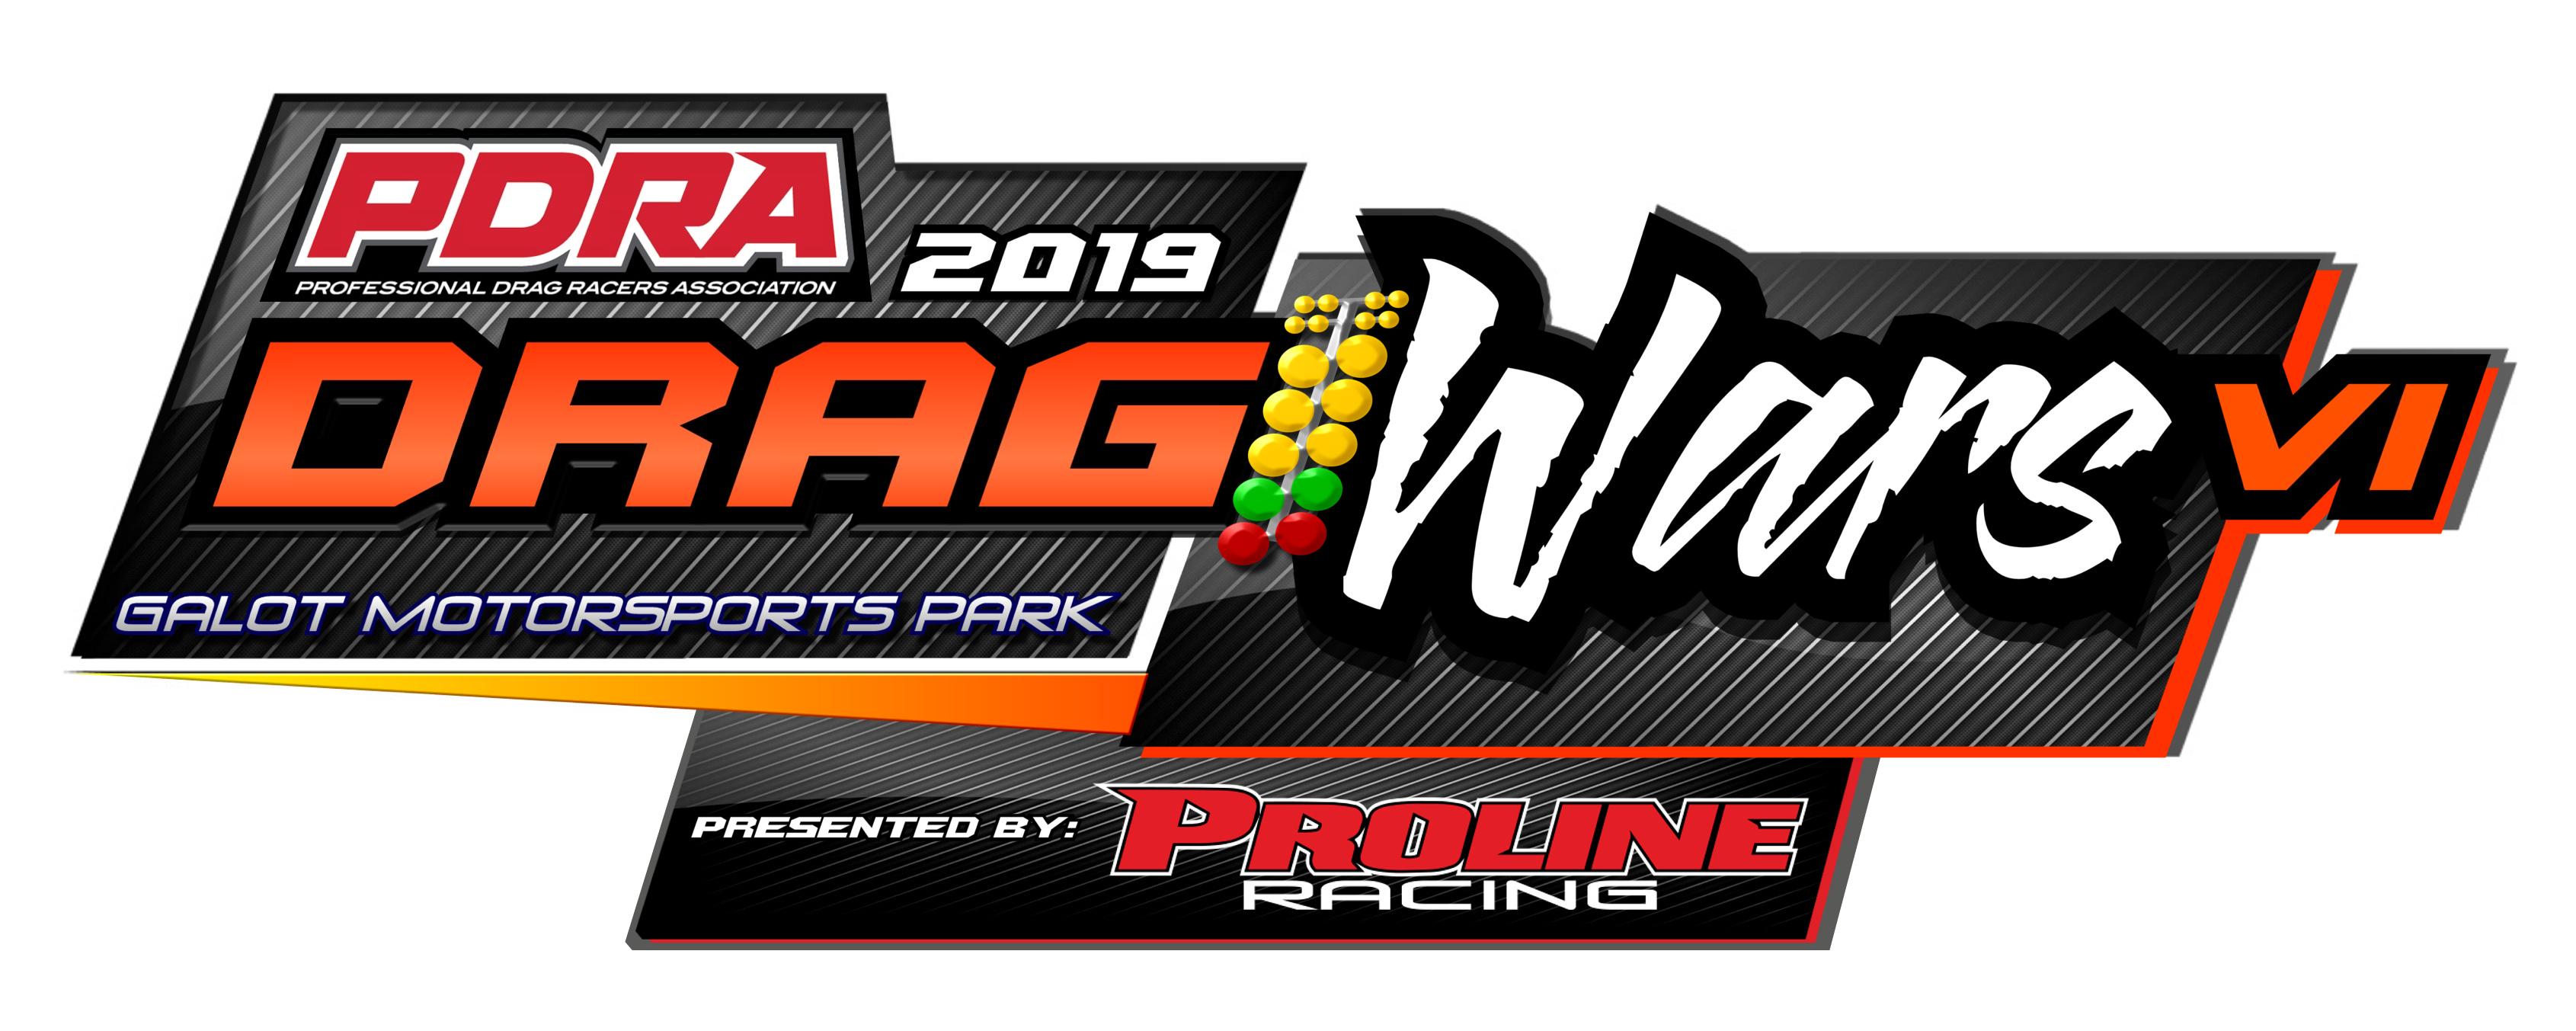 Pdra Logo - PDRA / Professional Drag Racers Association